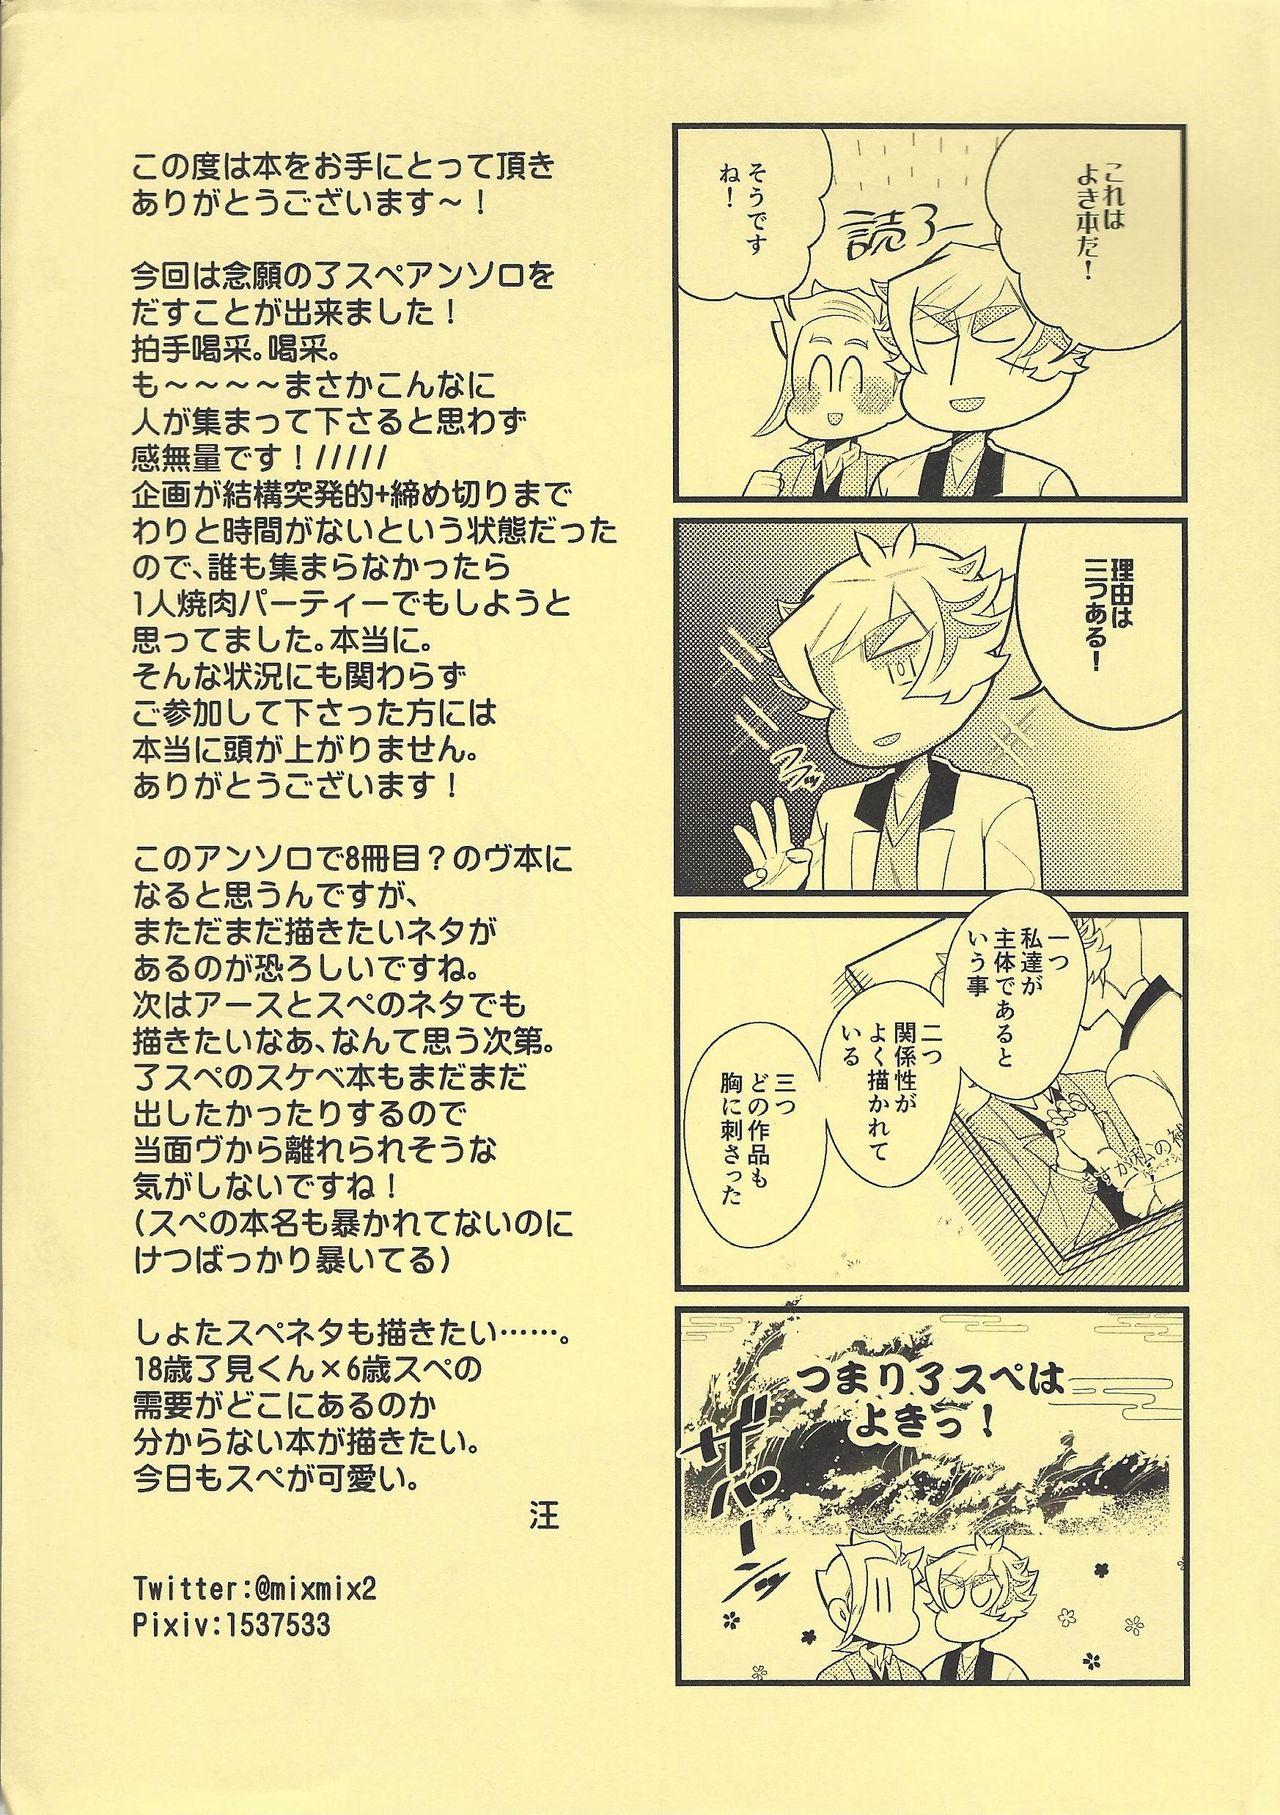 Ass Fetish Sasuga watashi no hosa-kanda - Yu gi oh vrains Cruising - Page 60